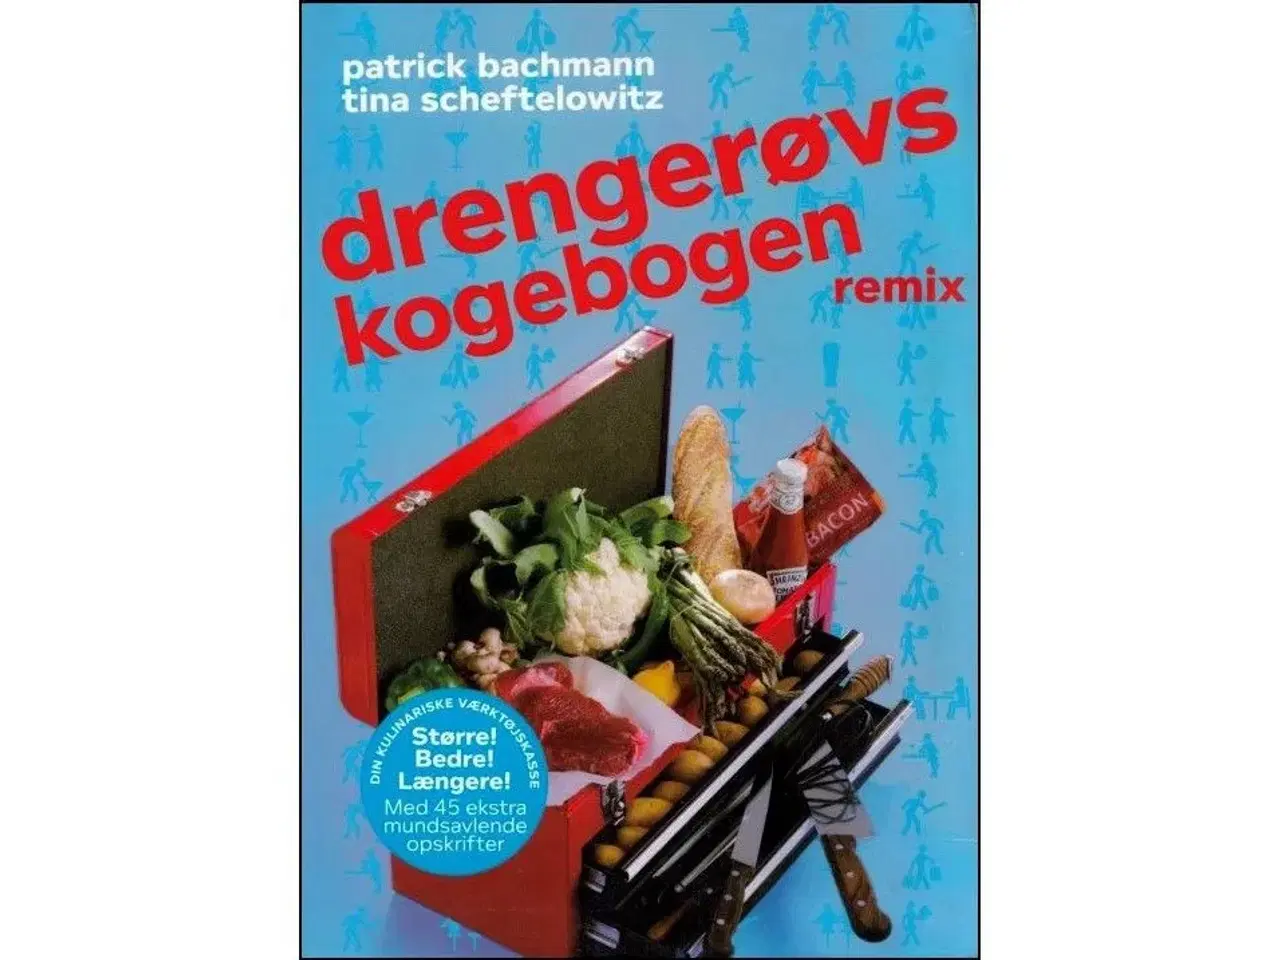 Billede 2 - Drengerøvskogebogen - Party Edition